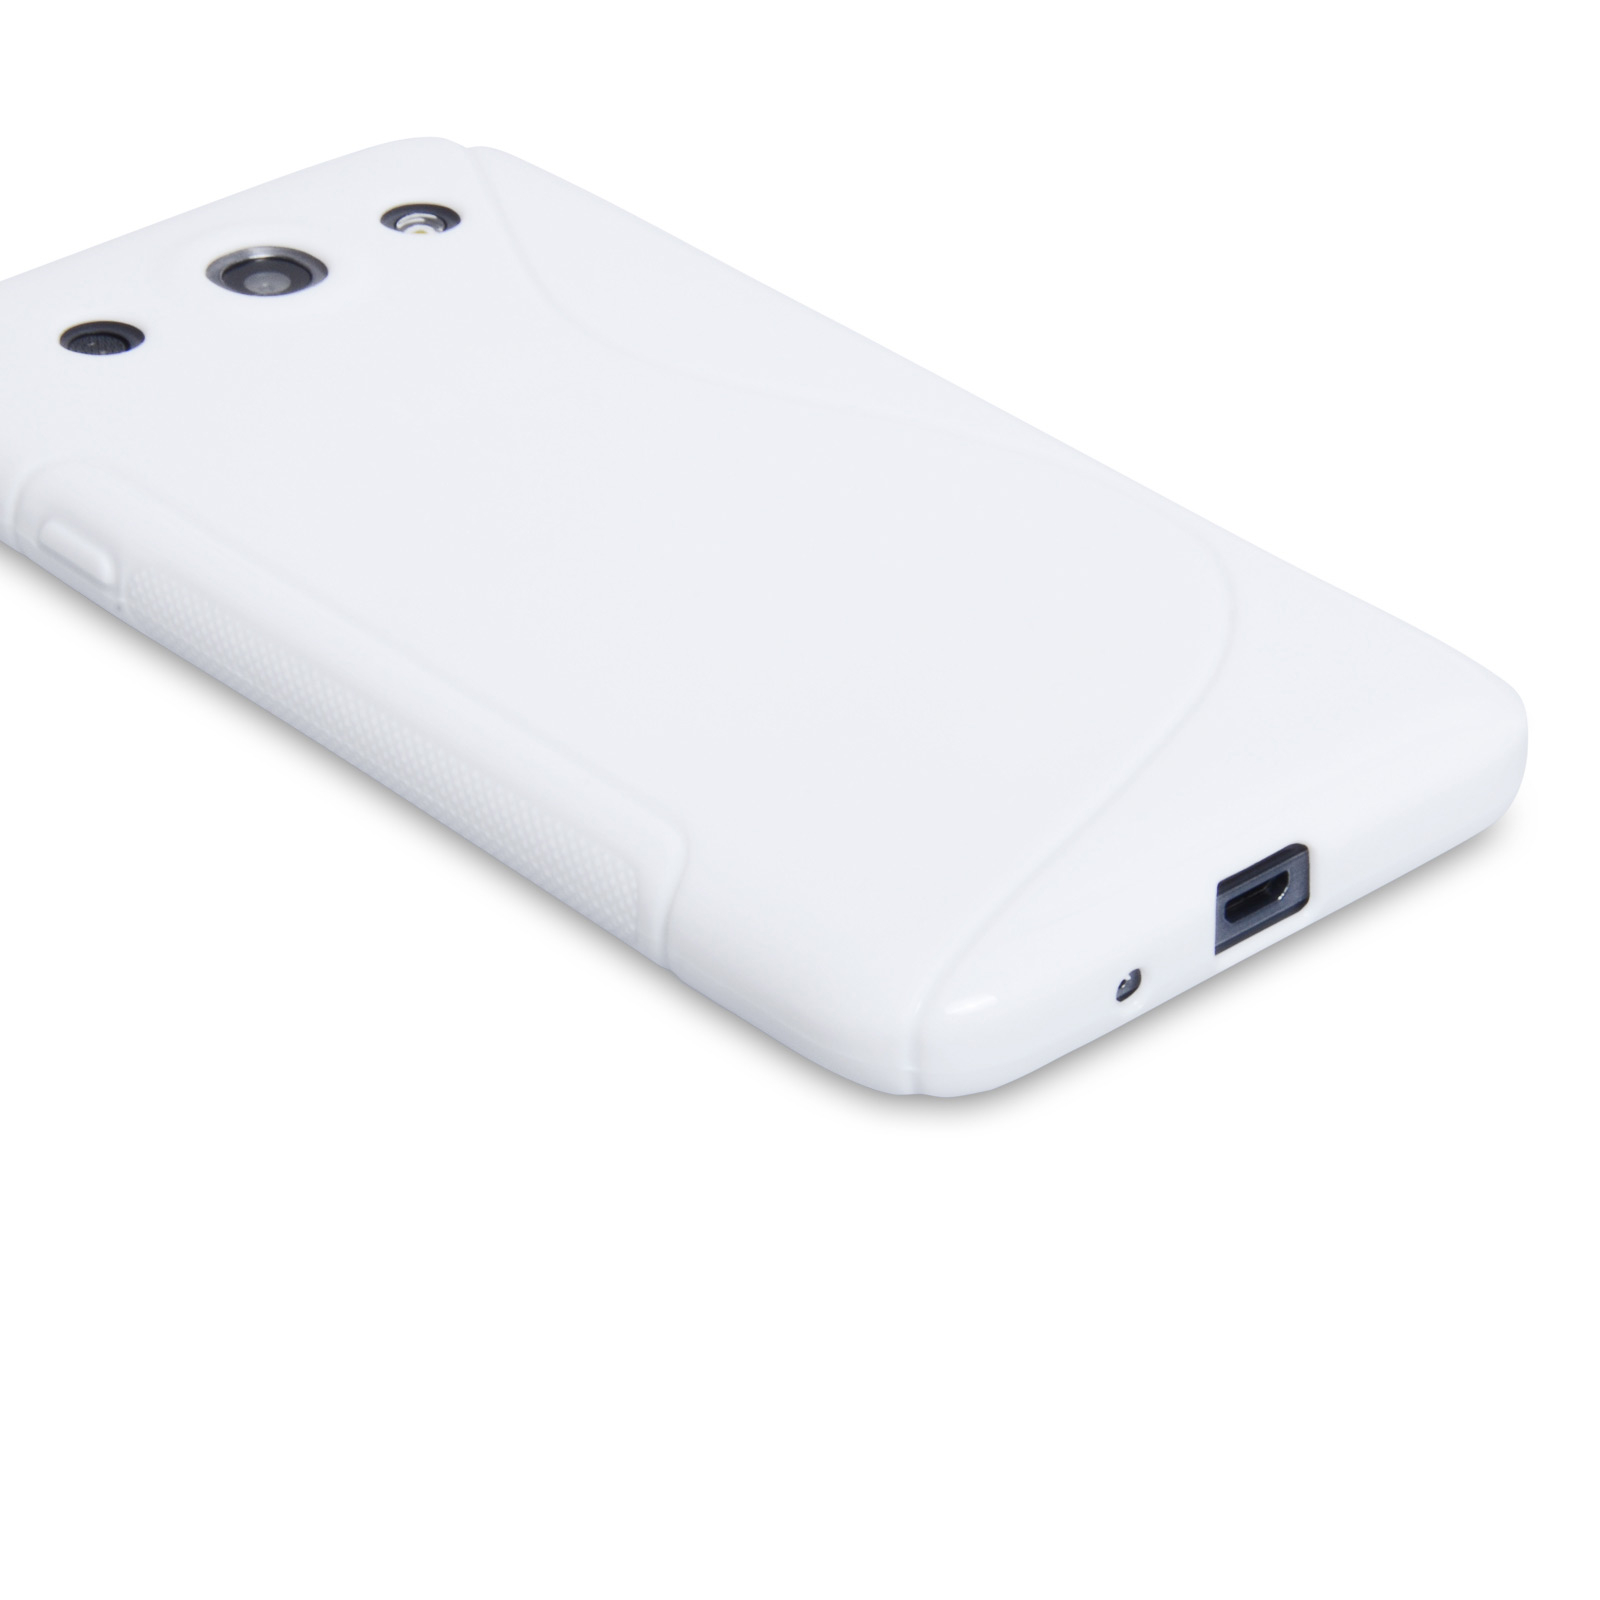 Caseflex LG G Pro S-Line Gel Case - White